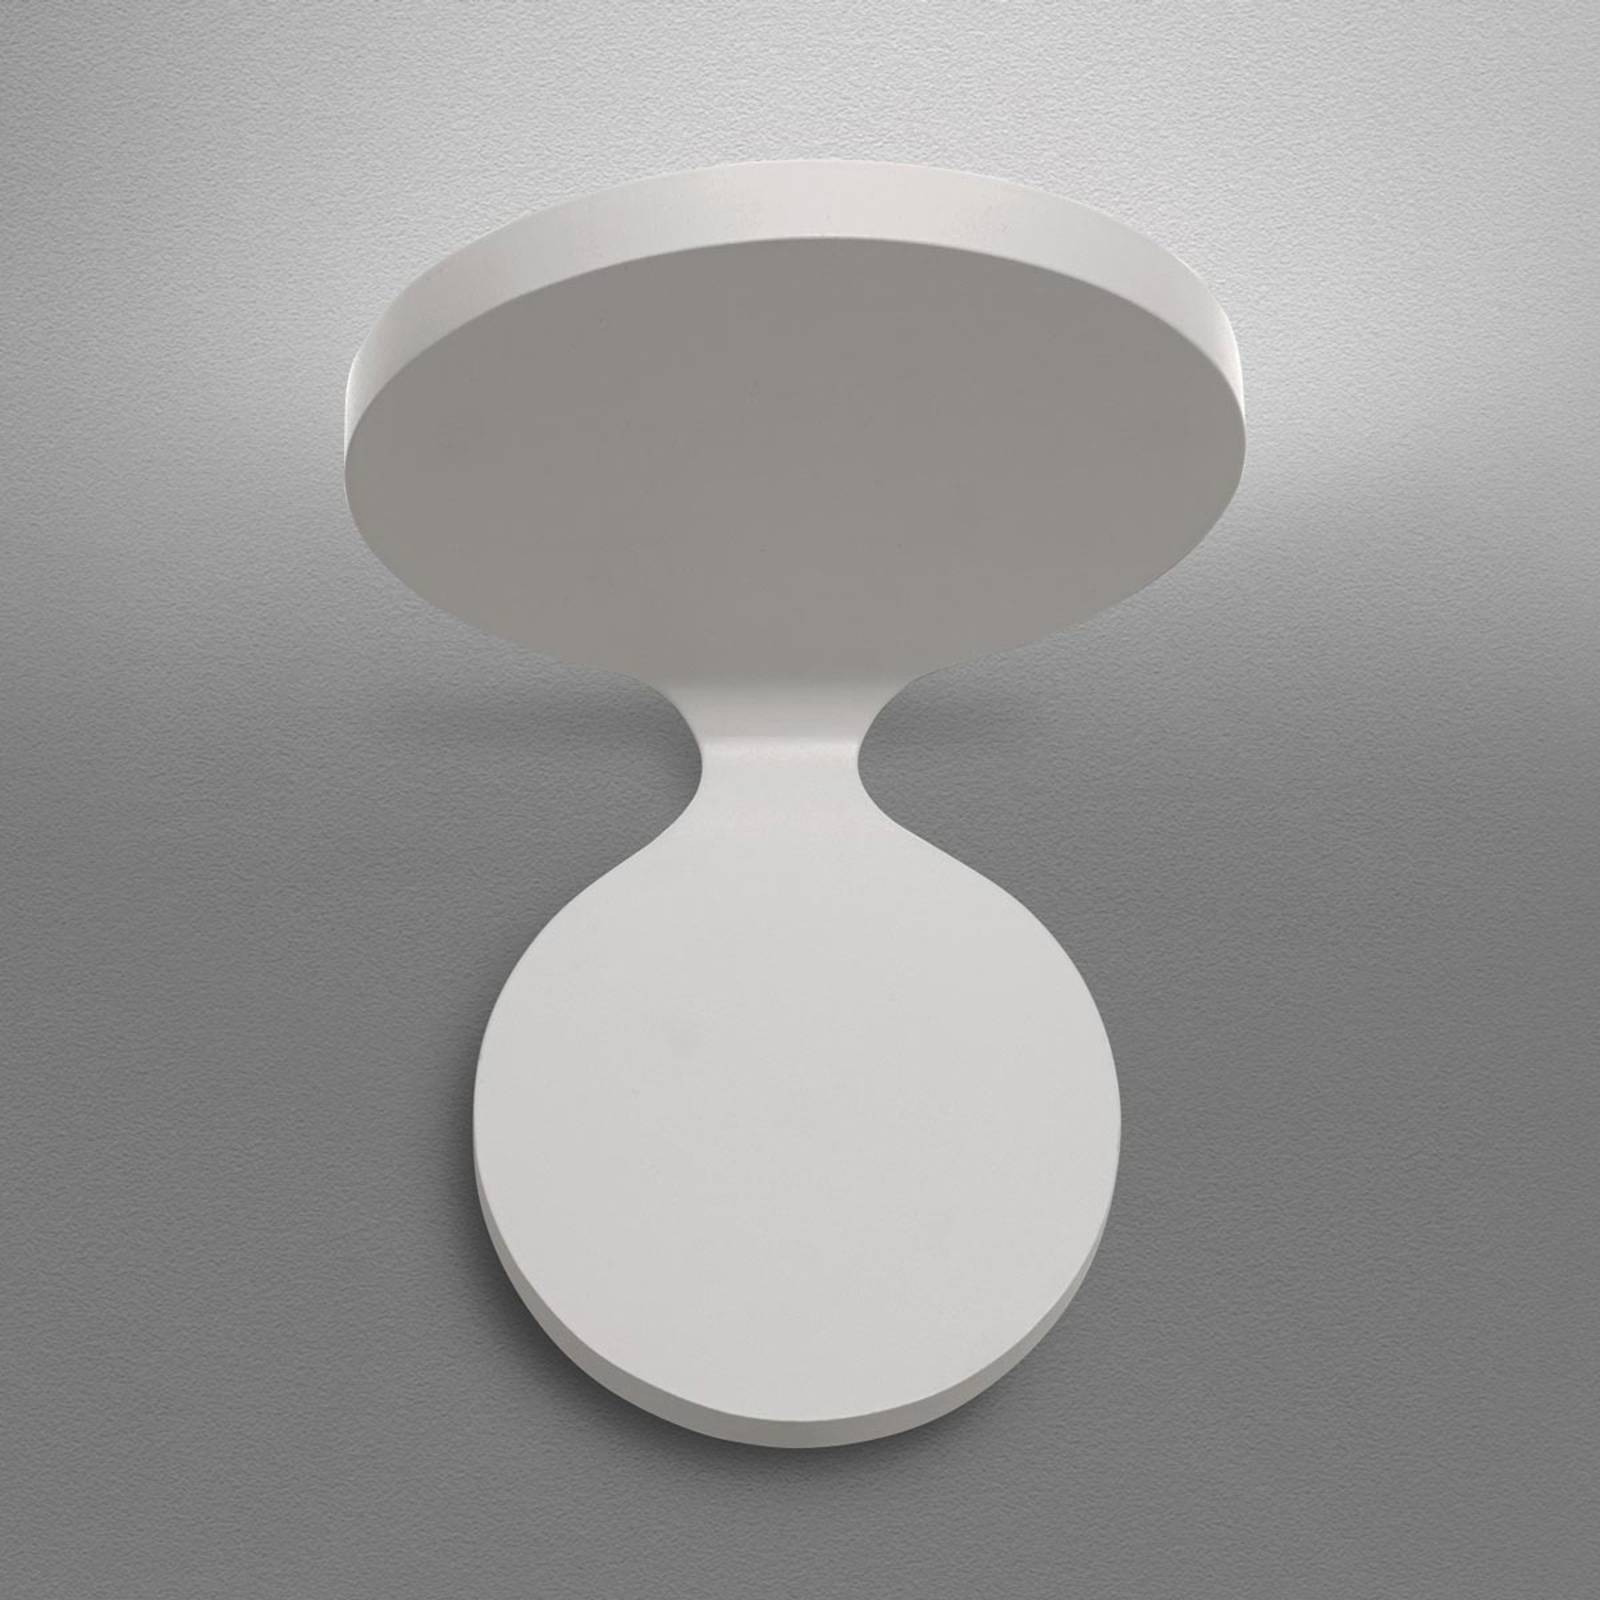 Designer LED wall light Rea 17 in white